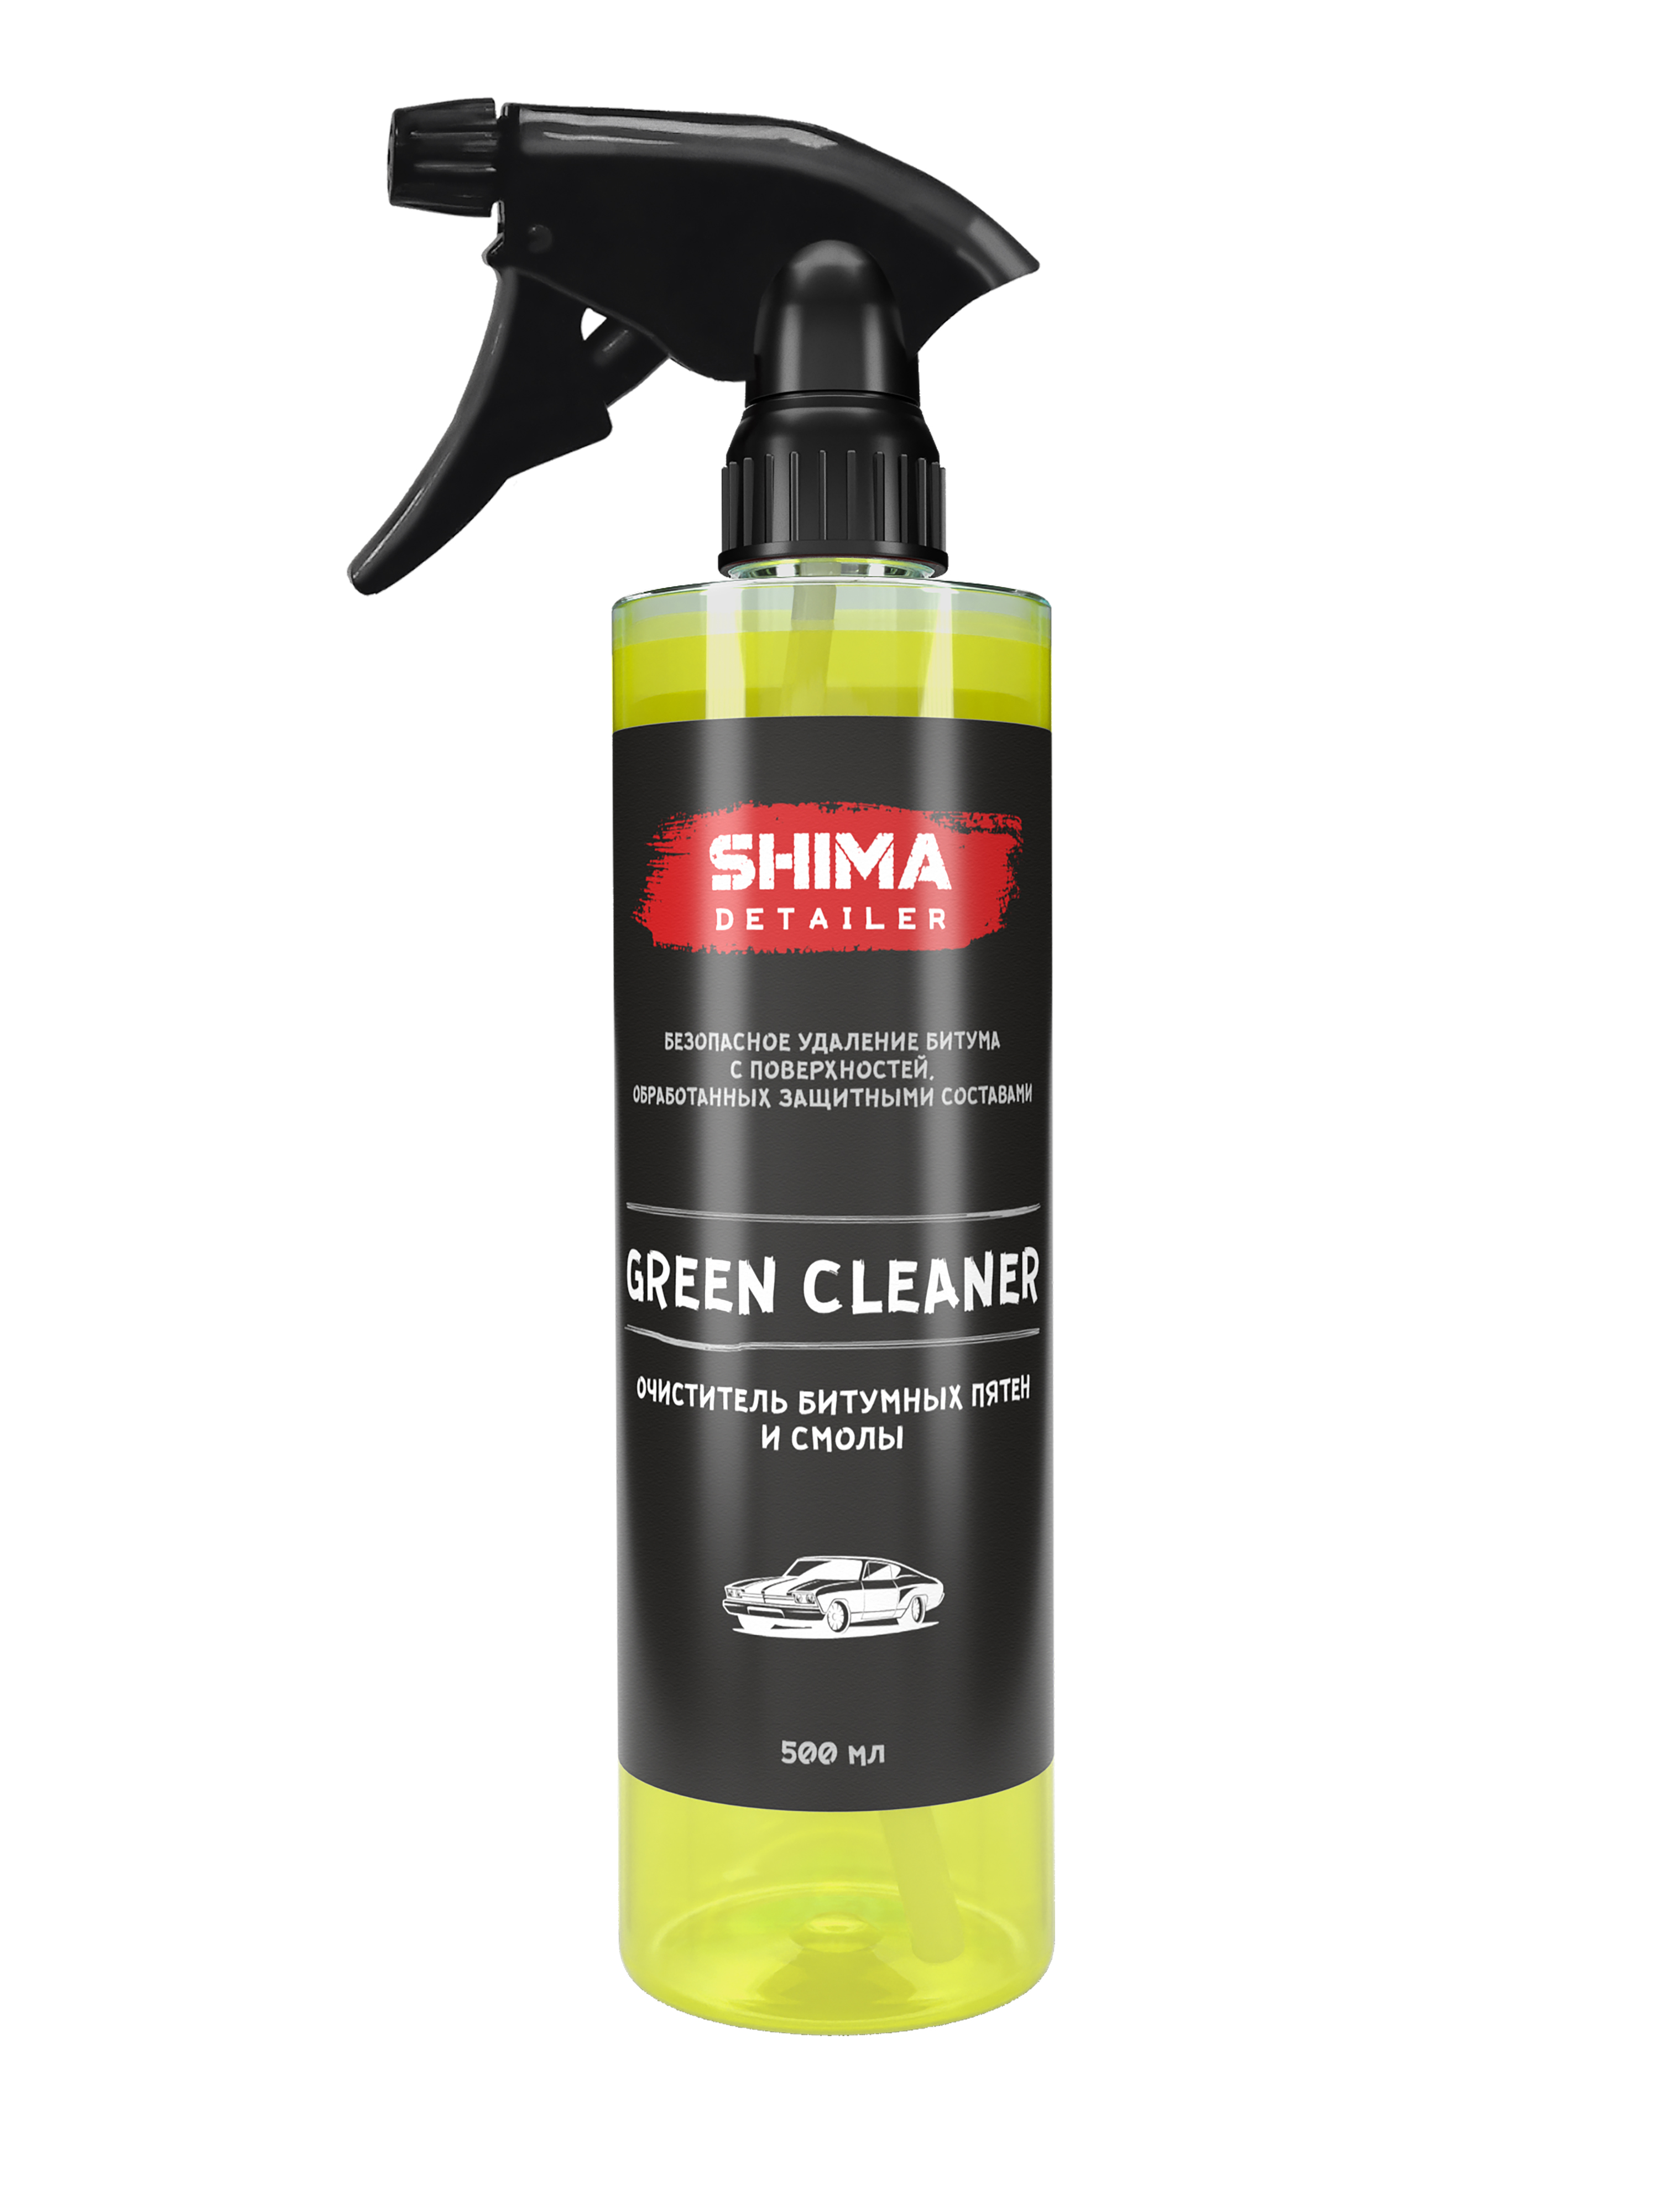 Очиститель битумных пятен и смолы SHIMA DETAILER Green cleaner 4603740920032